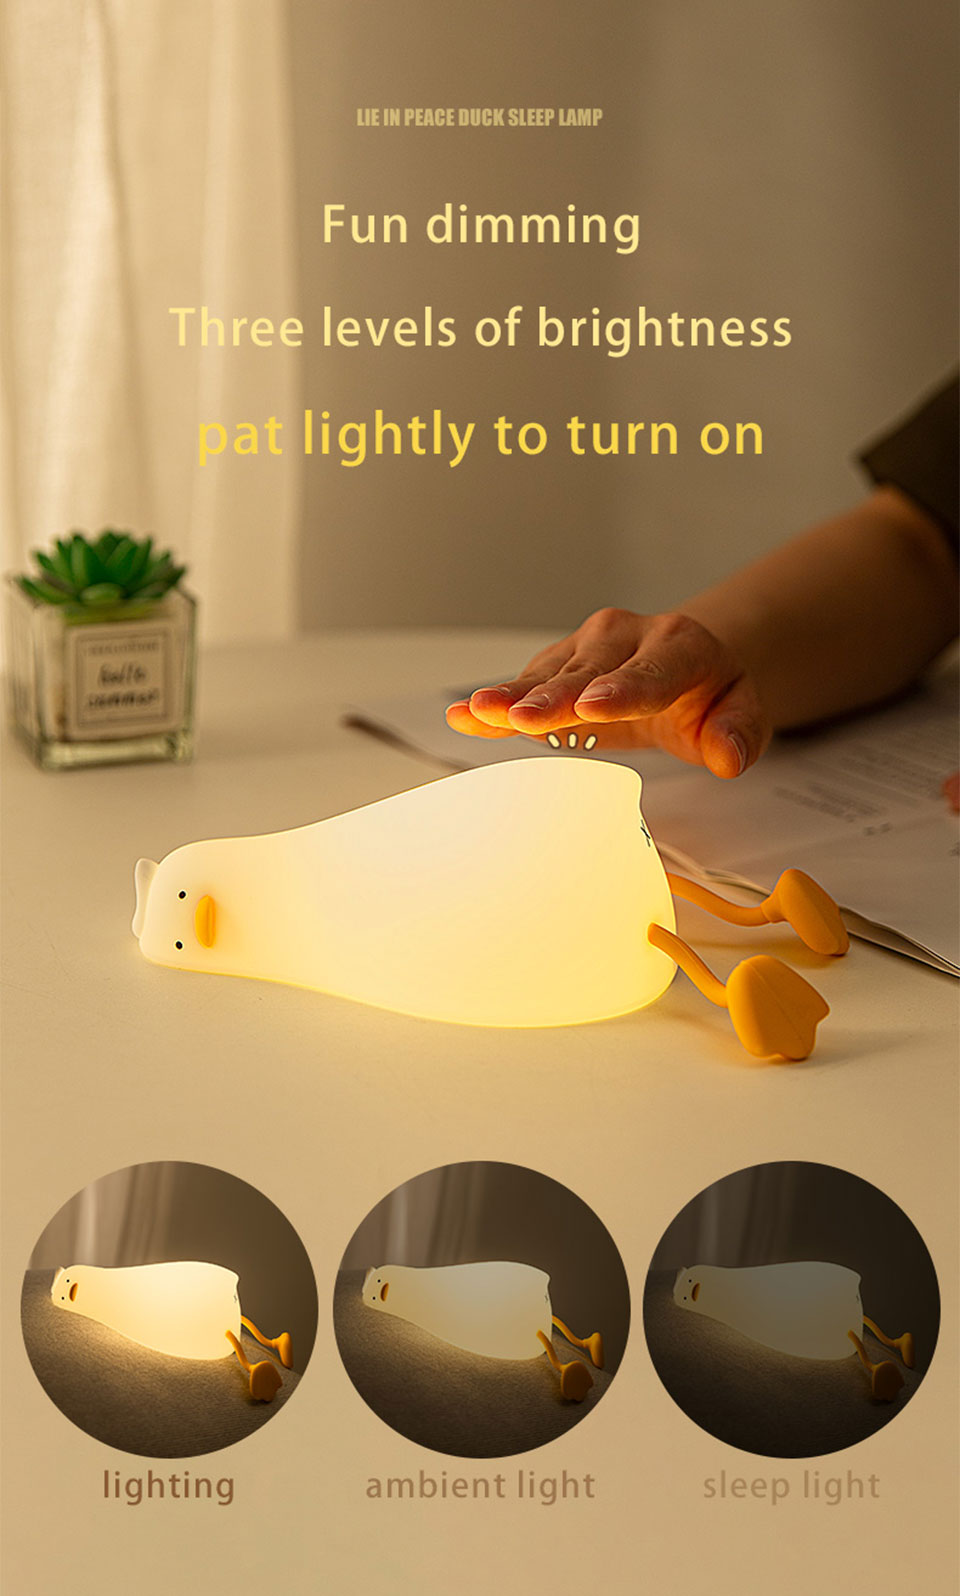 即使發光也懶洋洋！《懶散鴨鴨桌燈》用軟軟又慵懶的身體照亮休息的空間！ (1)